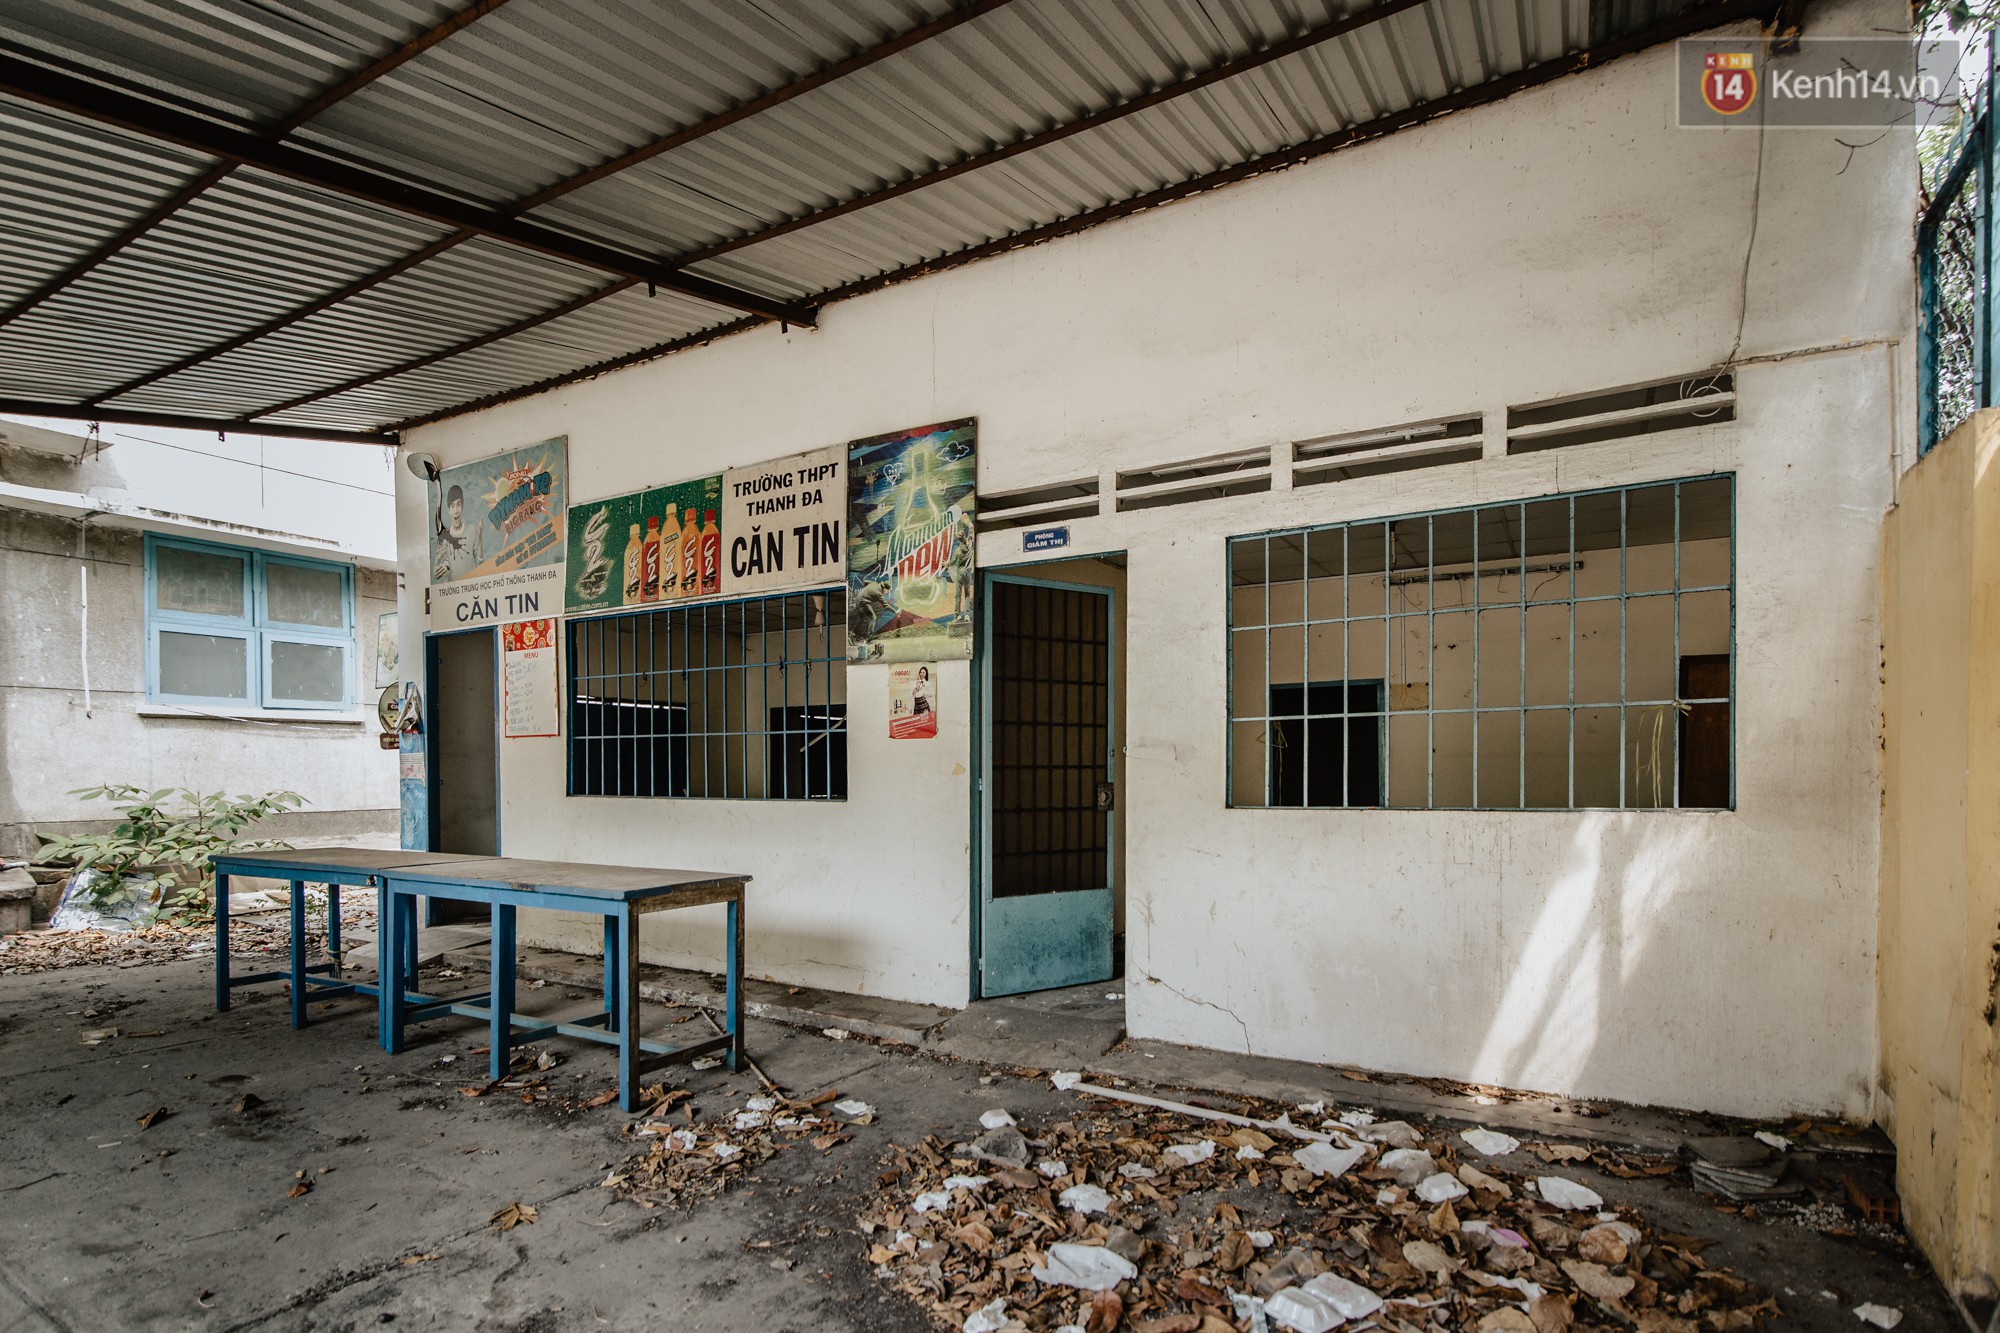 Khung cảnh rợn người bên trong trường học 40 năm tuổi bị bỏ hoang tại Sài Gòn - Ảnh 3.